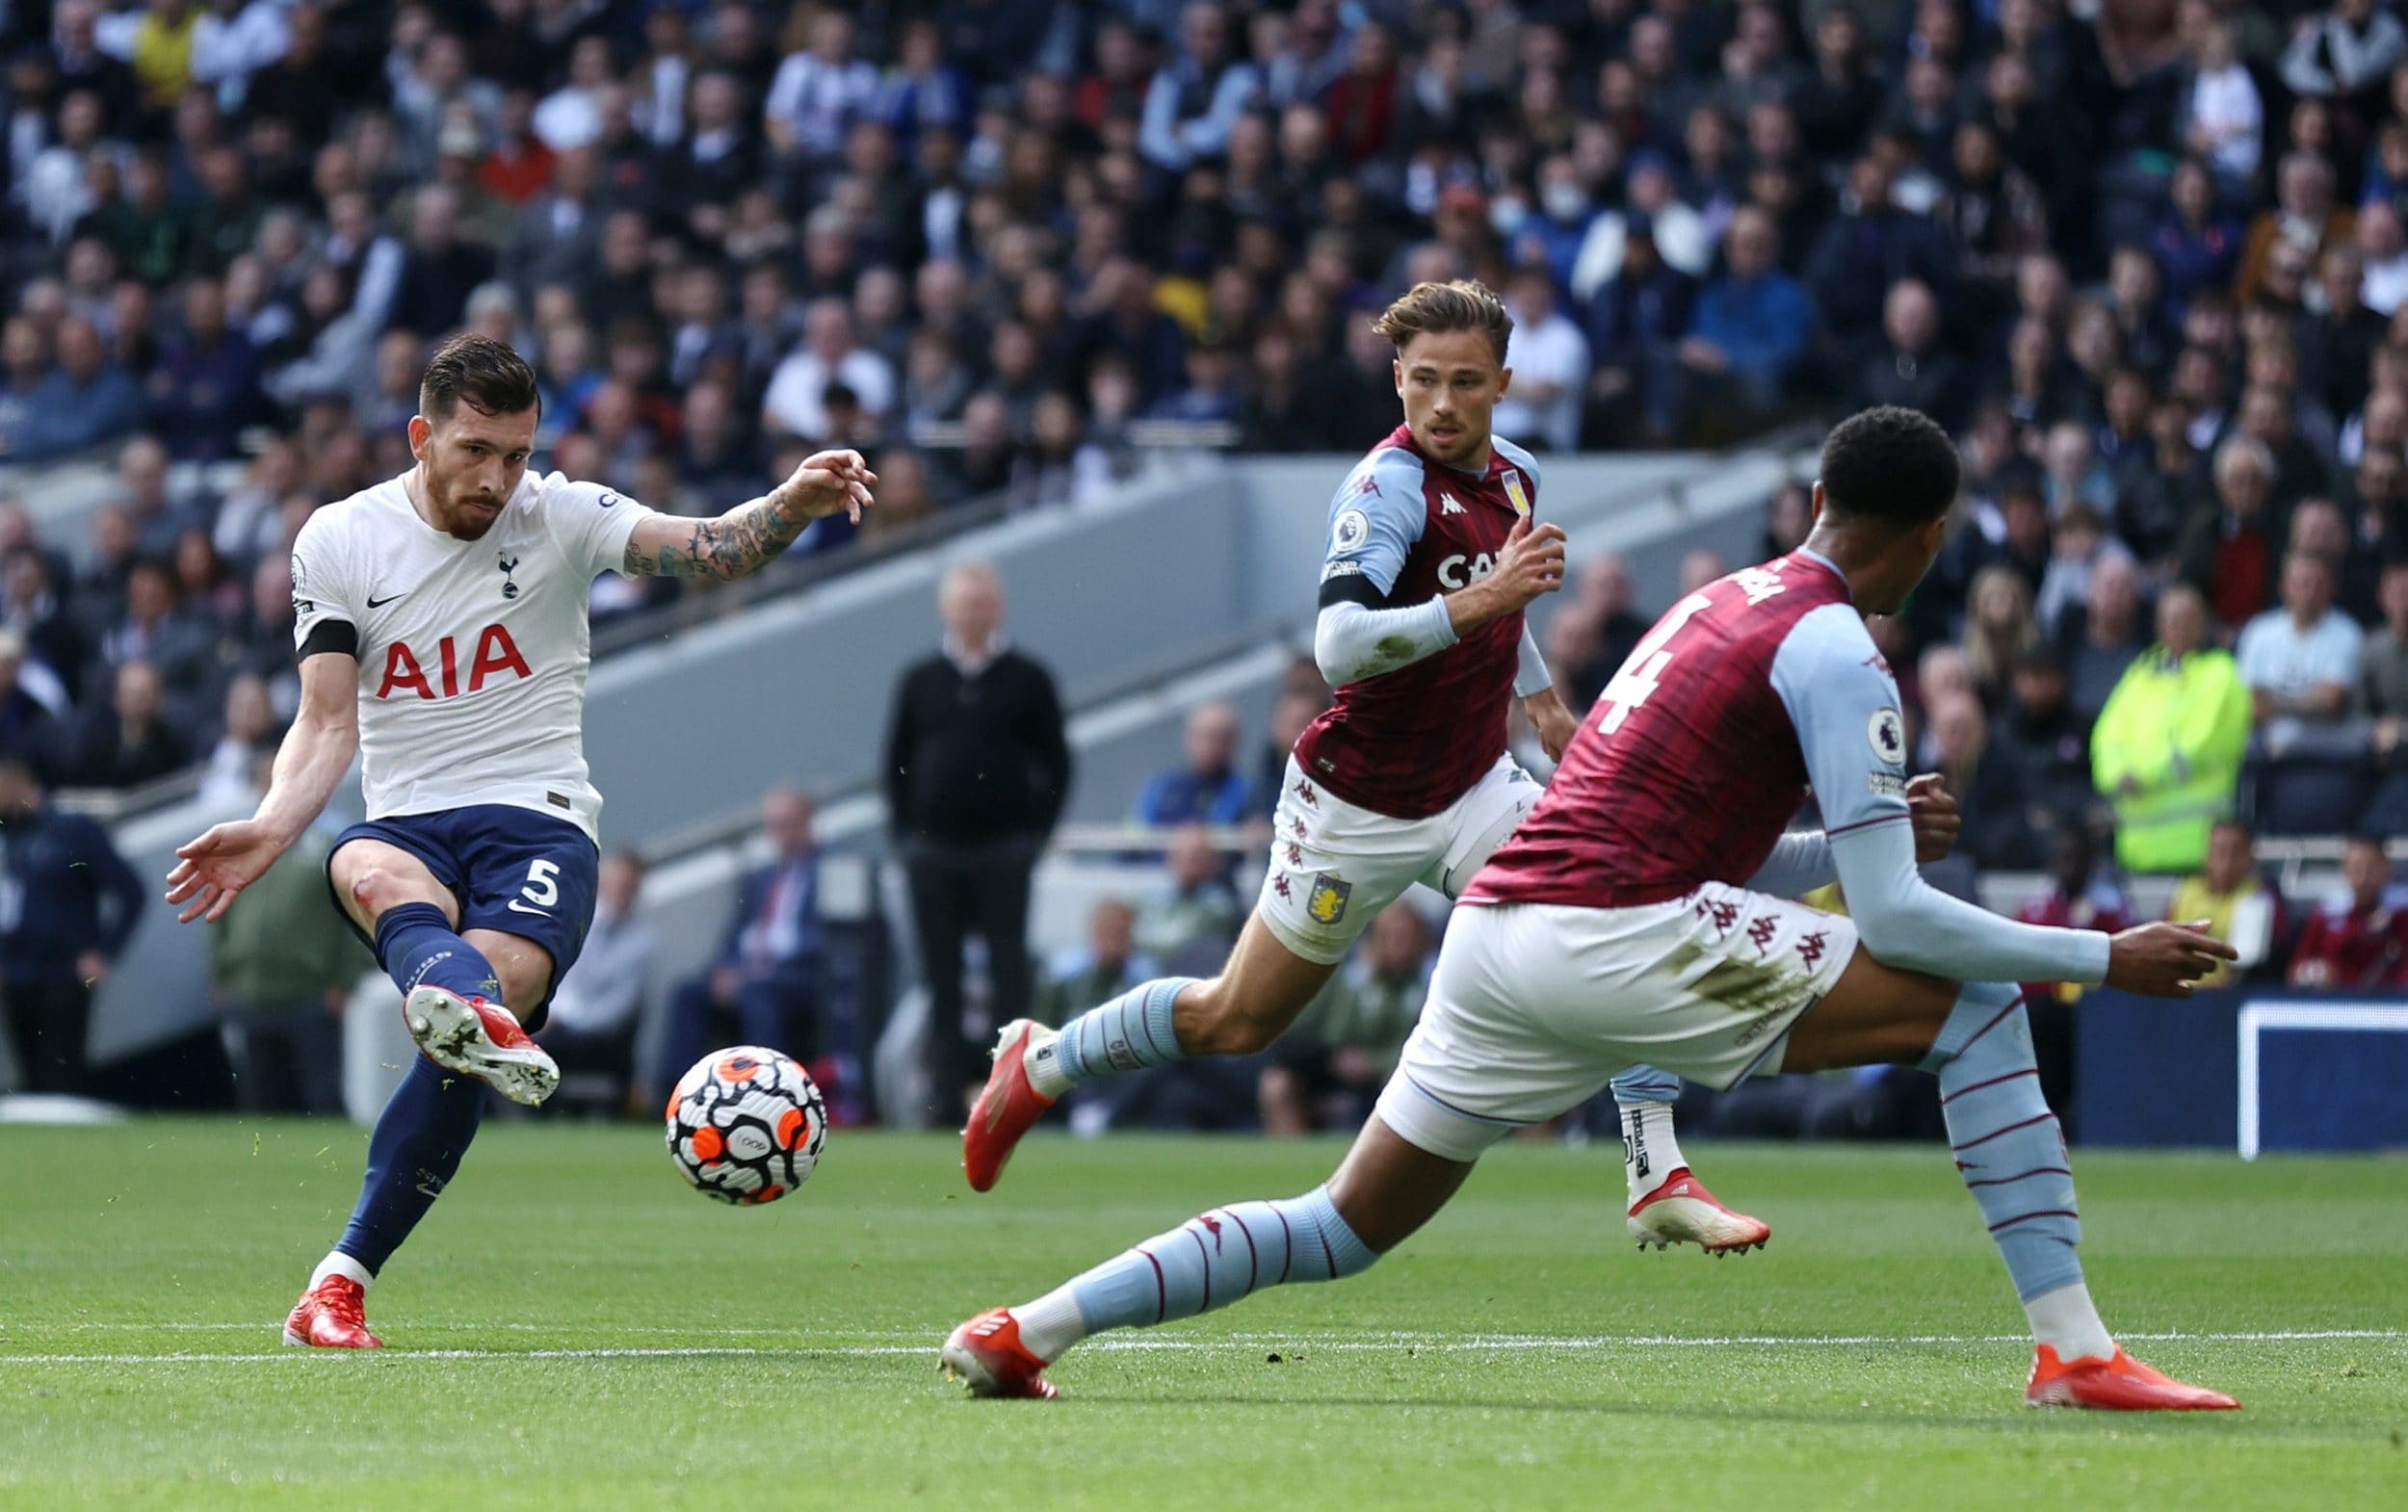 Tottenham Hotspur vs Aston Villa Premier League Match Day 18